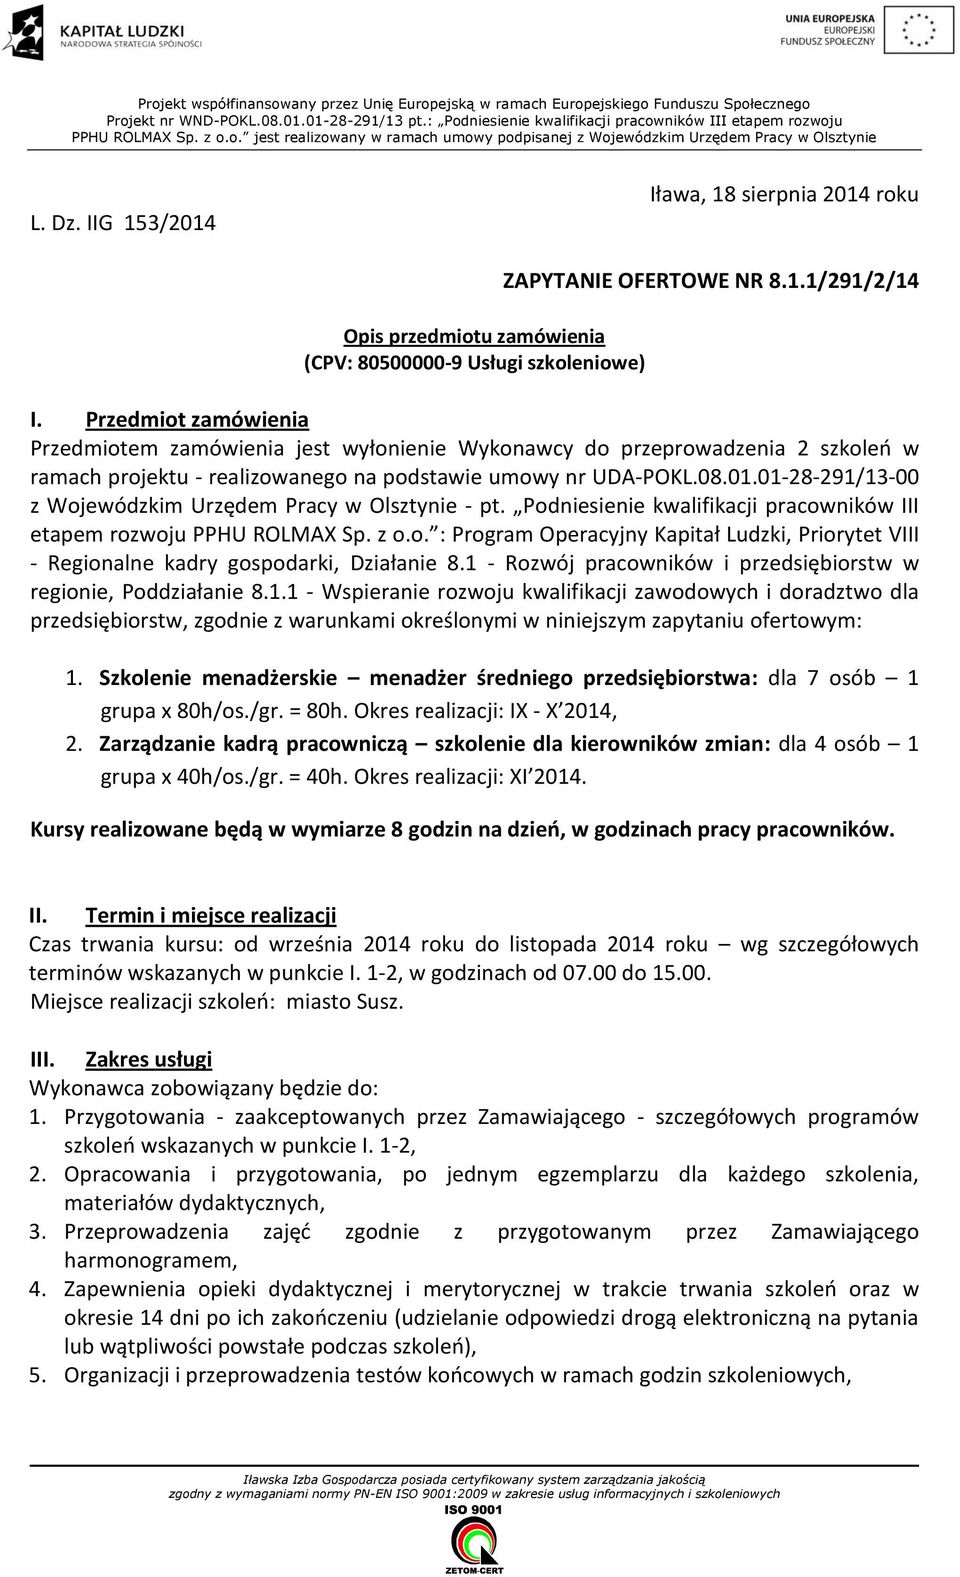 IIG 153/2014 Iława, 18 sierpnia 2014 roku Opis przedmiotu zamówienia (CPV: 80500000-9 Usługi szkoleniowe) ZAPYTANIE OFERTOWE NR 8.1.1/291/2/14 I.